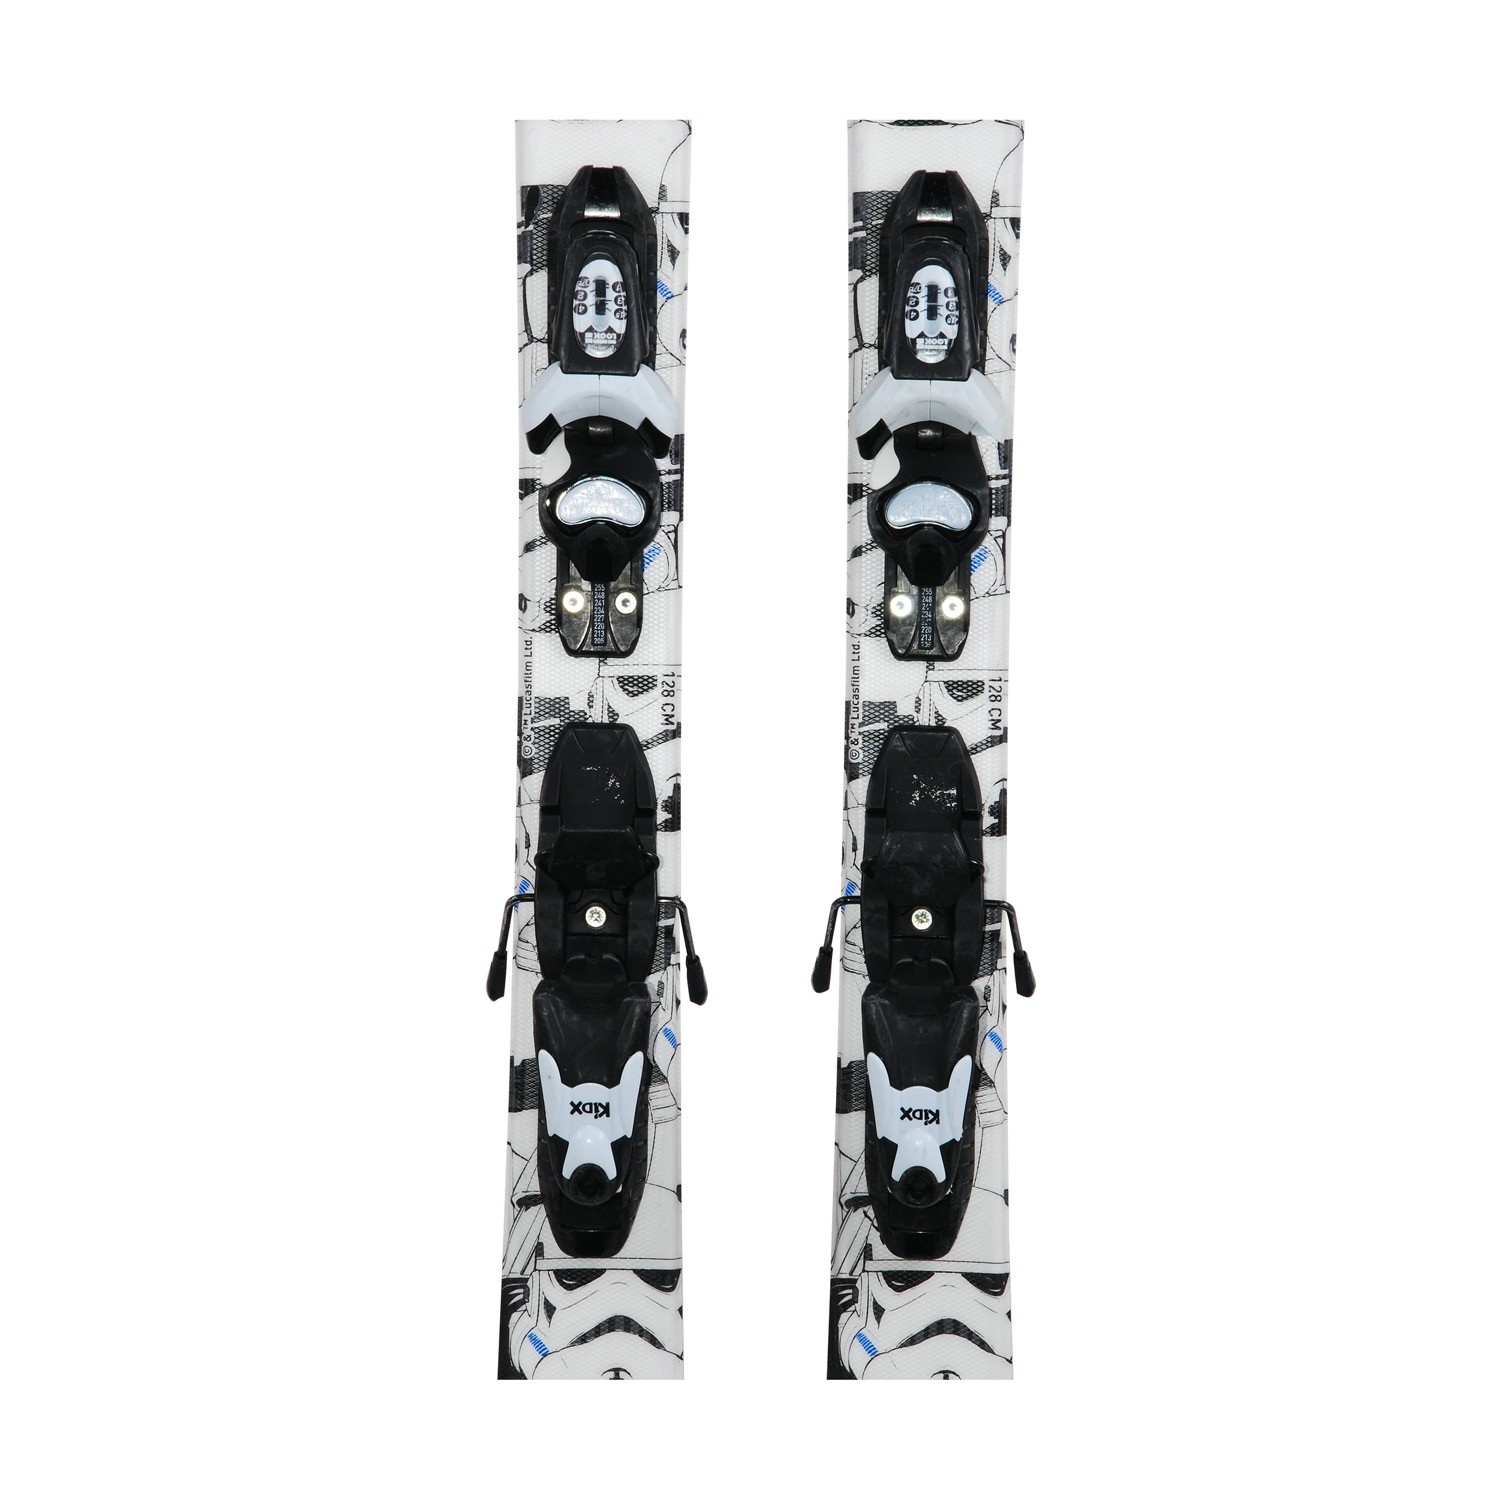 140 cm Junior Ski Rossignol Star Wars Gelegenheit Befestigungen Qualität A 